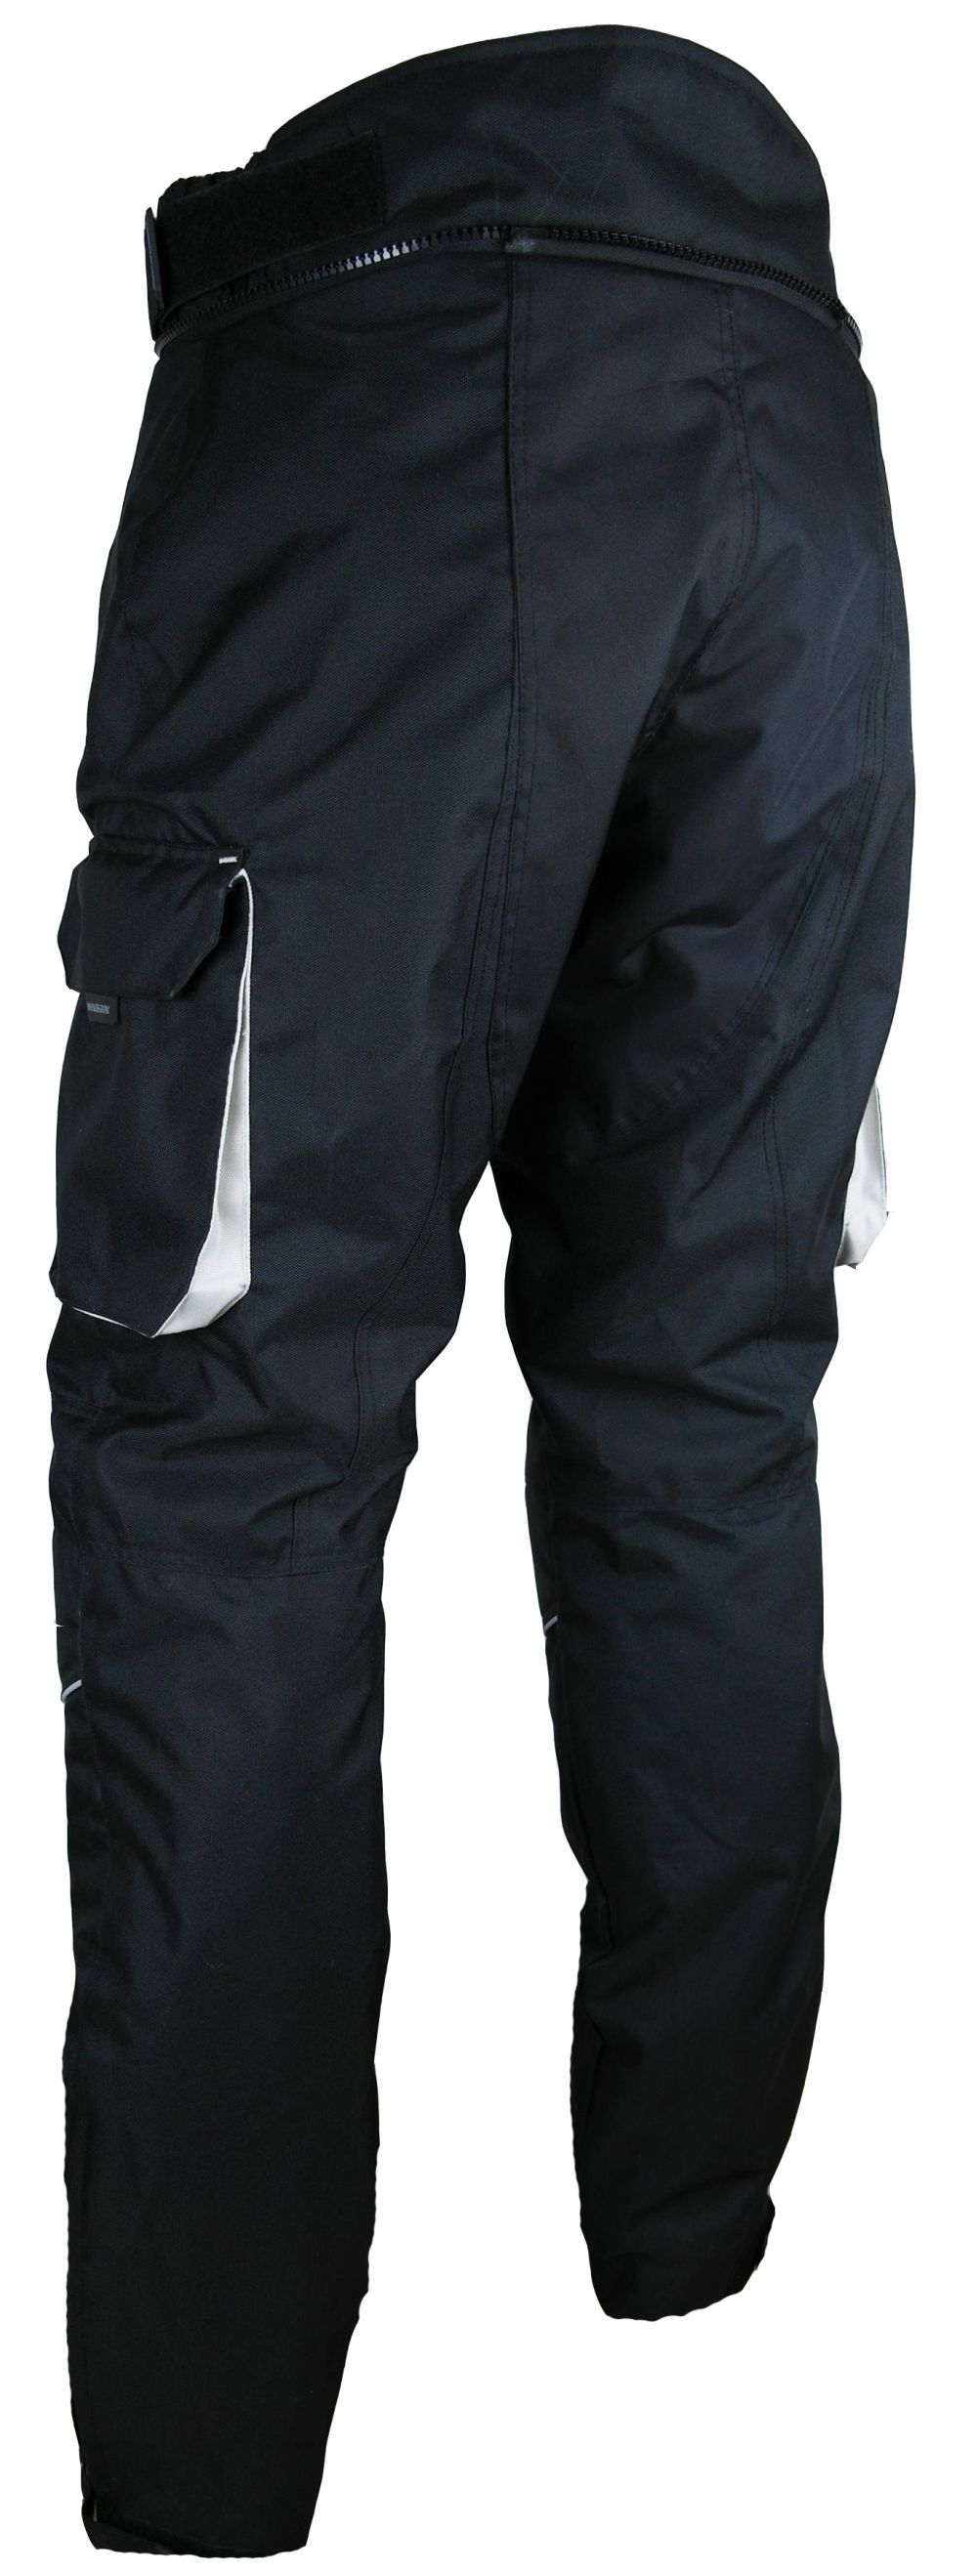 Heyberry Motorradhose Schwarz Grau Textil mit Oberschenkeltaschen M L XL XXL 3XL